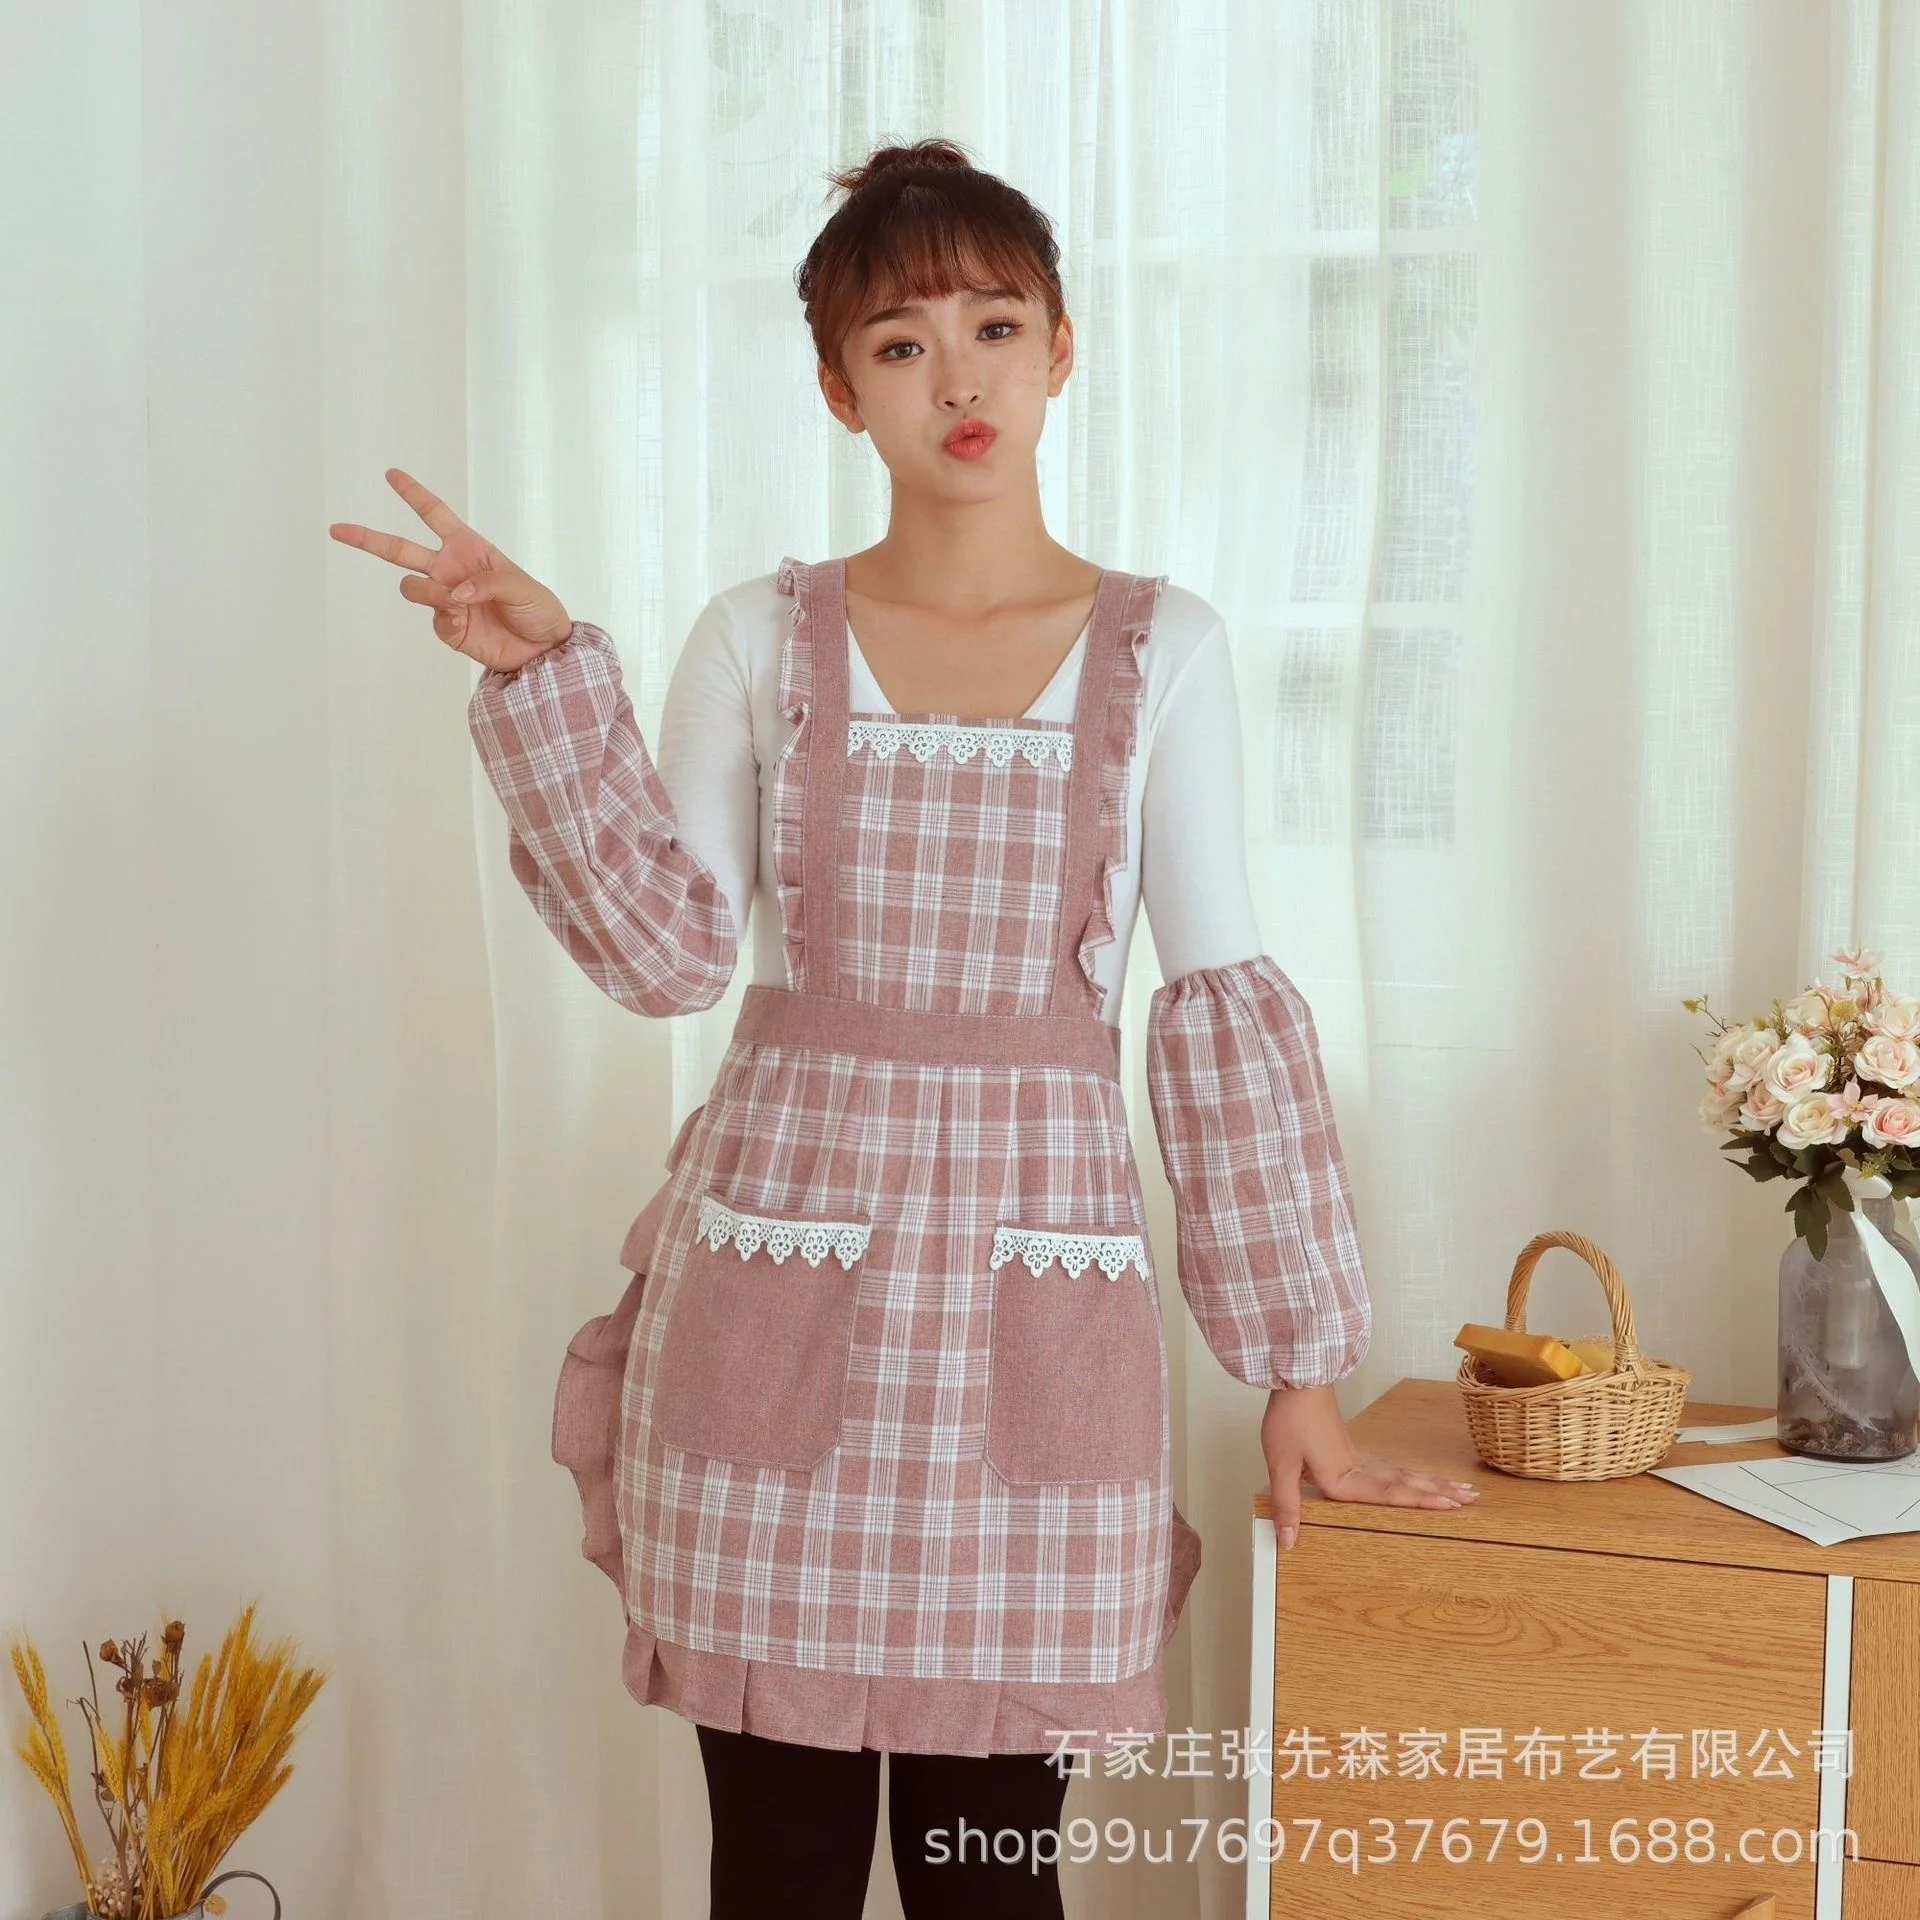 Тканевый фартук для домашней кухни 2021 Новая Корейская мода, Домашний рабочий фартук, Дышащий фартук, юбка для приготовления пищи 0